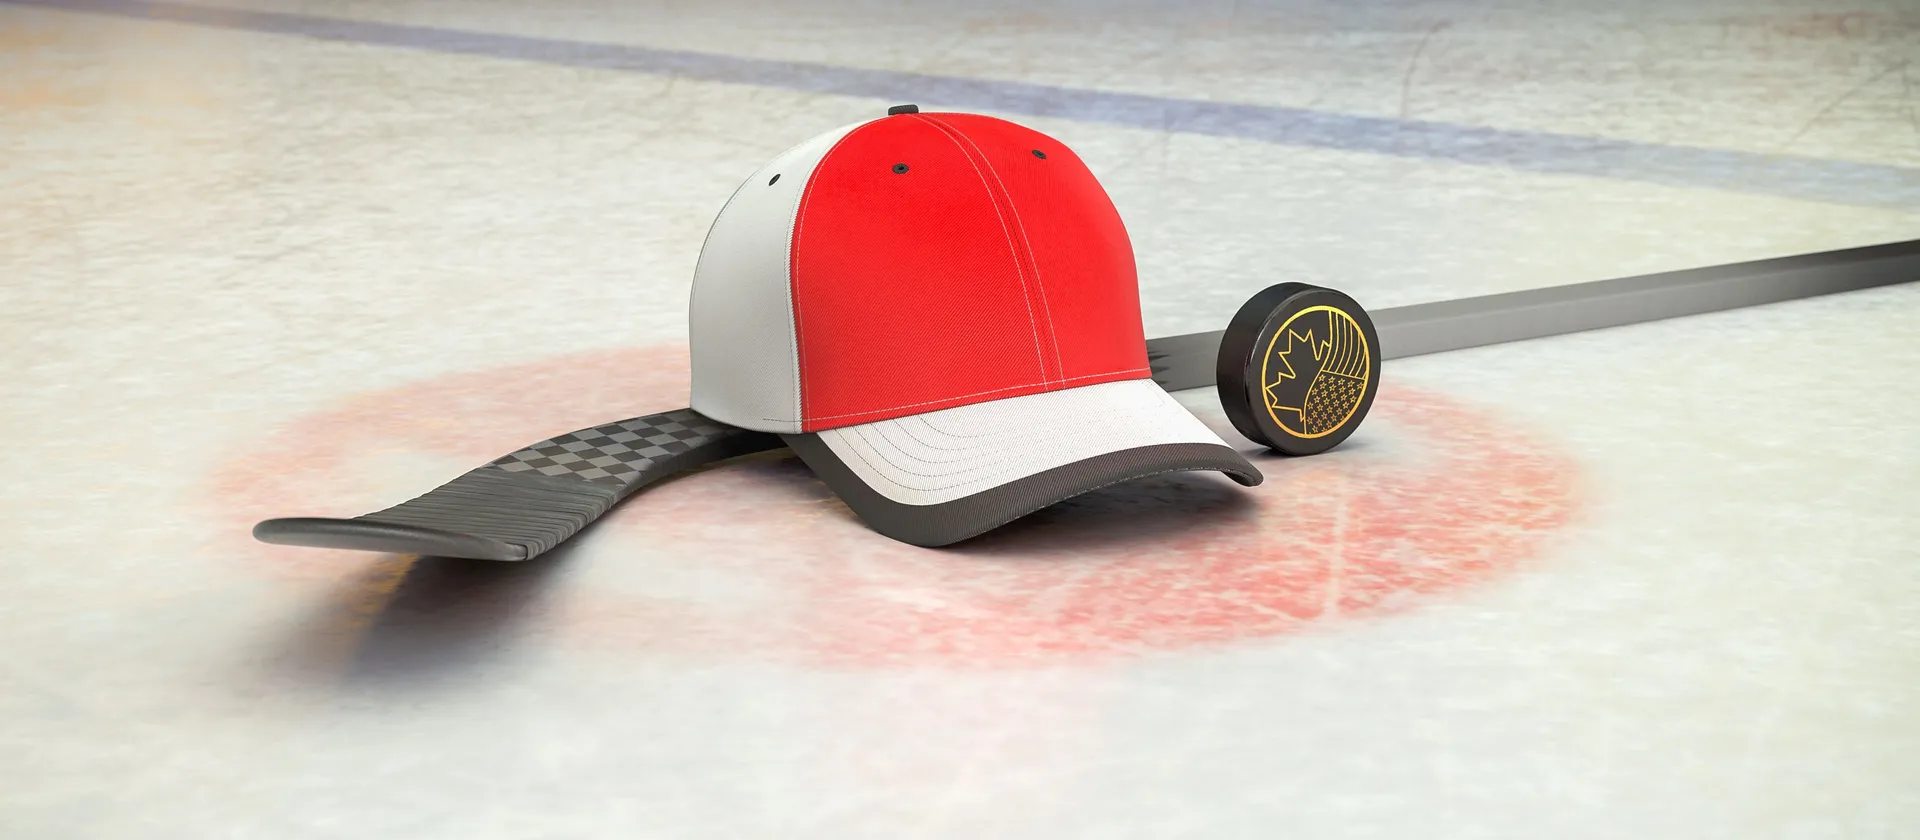 Bild på hockeyklubba, puck och en supporterkeps med NHL-laget Chicago Blackhawks färger